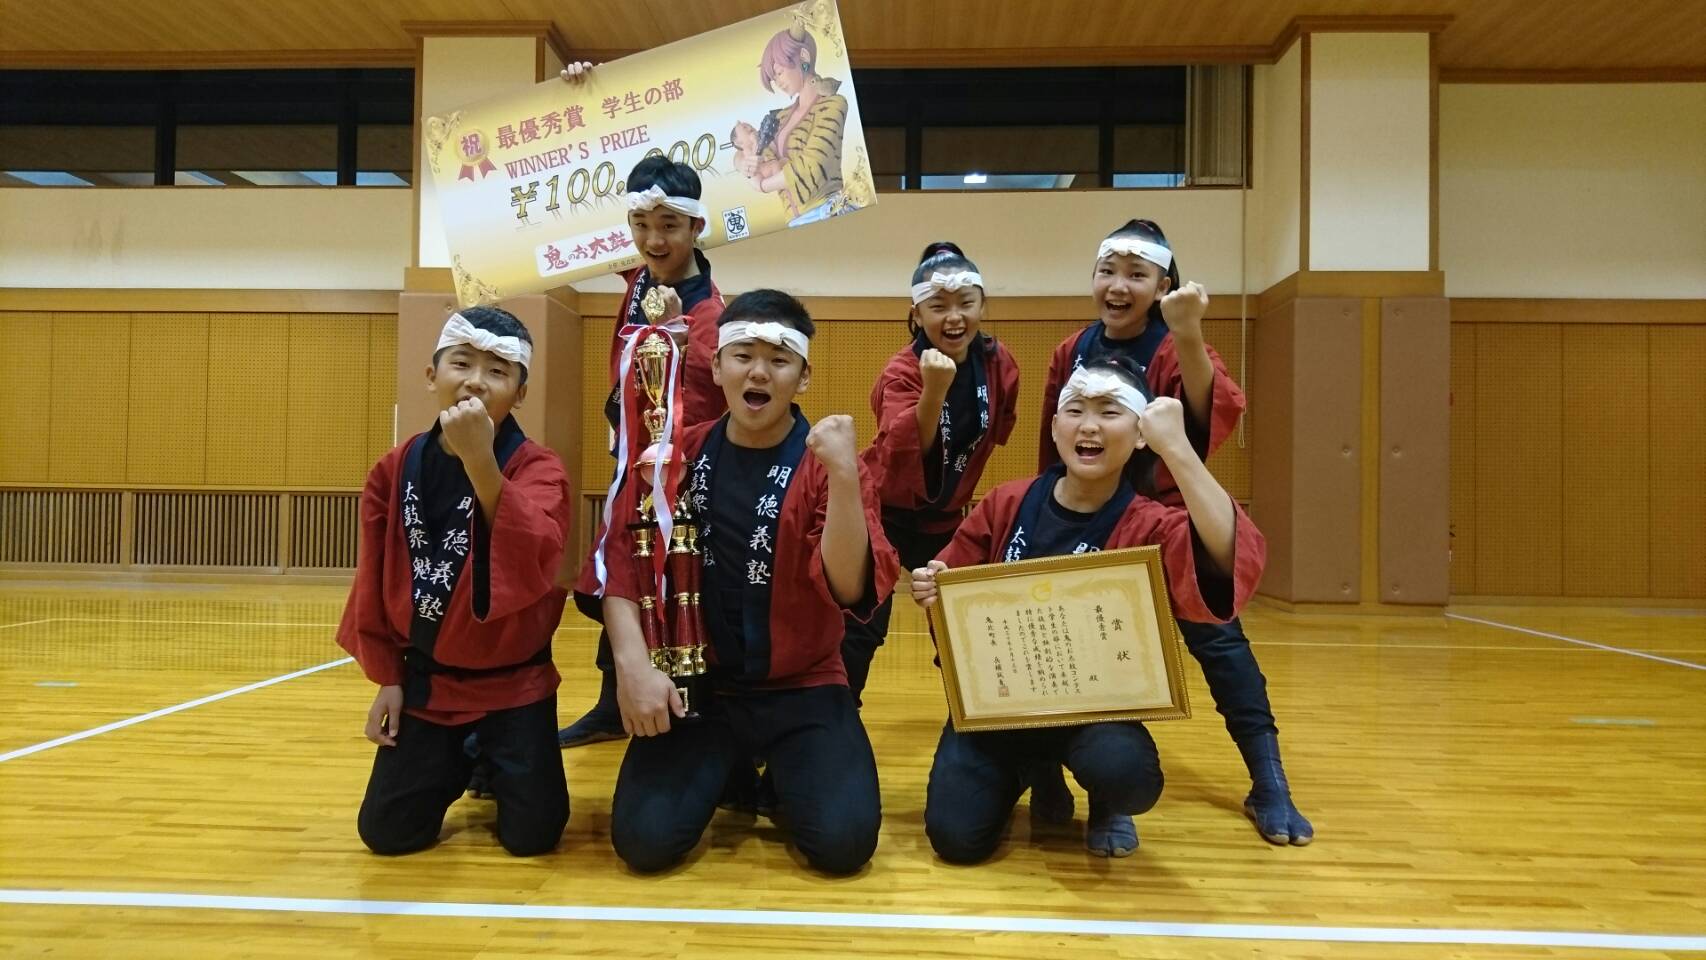 2018年鬼のお太鼓コンテスト学生の部 最優秀賞受賞記念